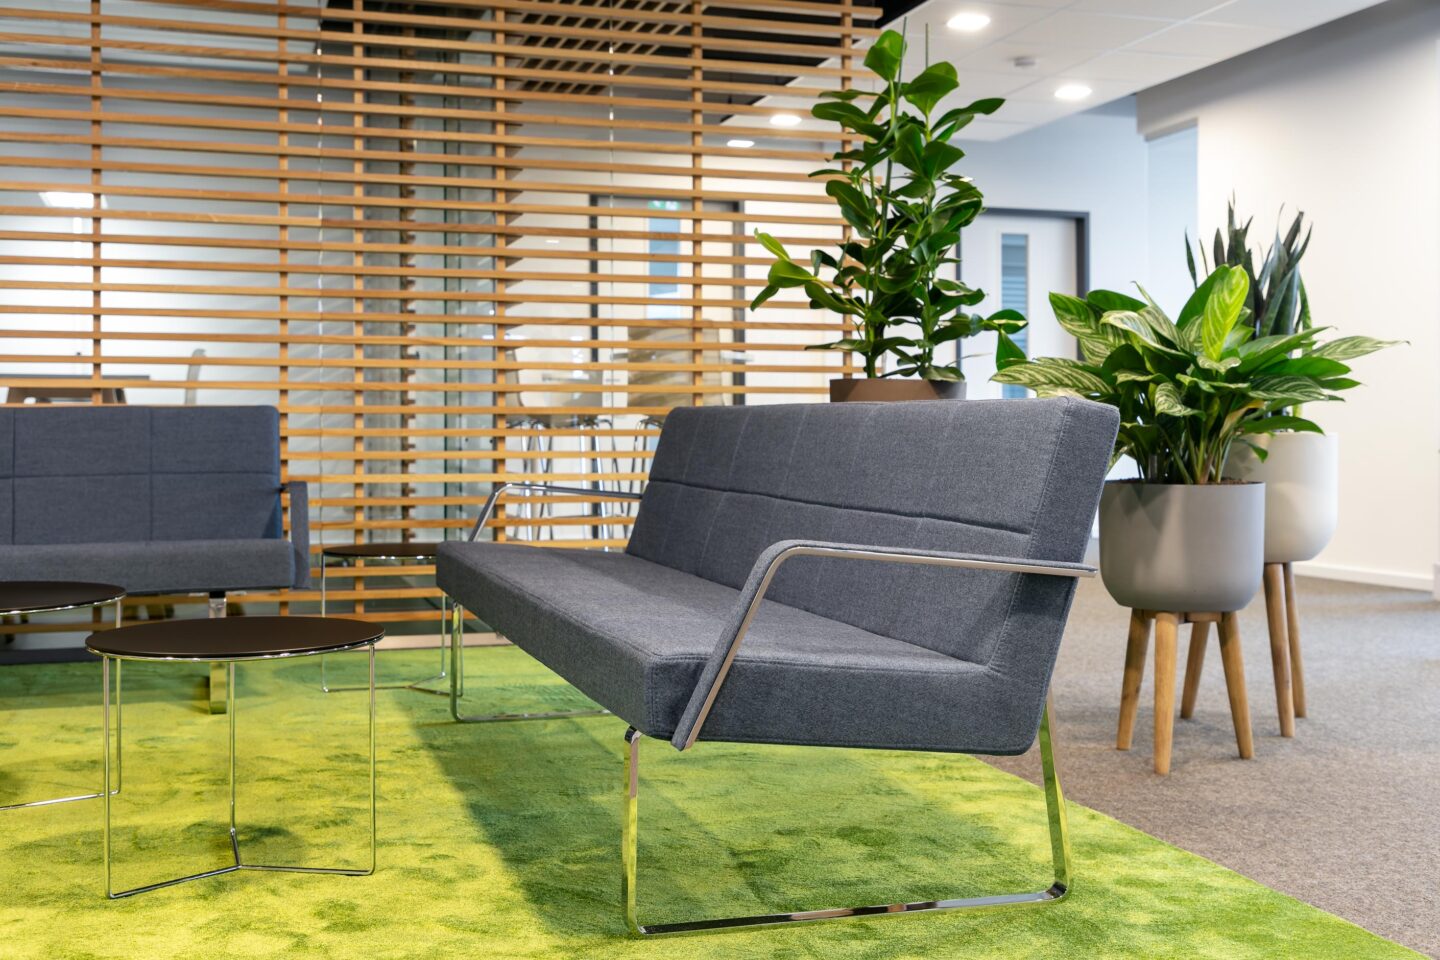 Nussbaum Medien Ettlingen │ office furniture from Vitra, Brunner & Werner Works │ lounge area